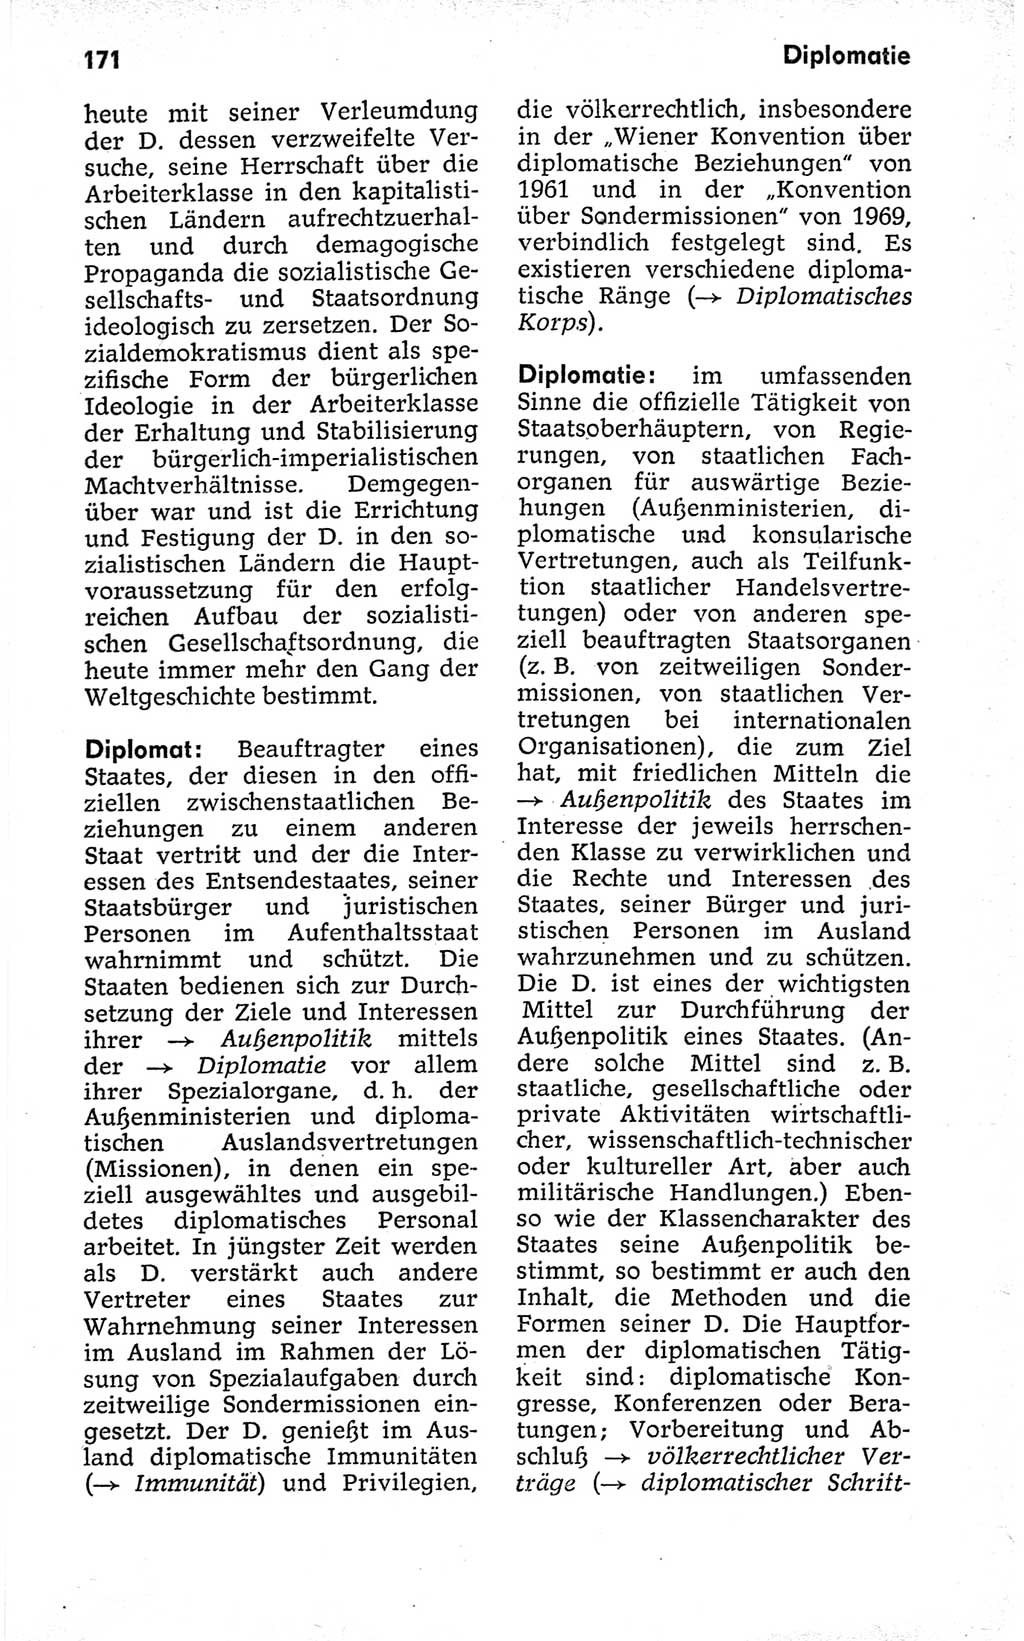 Kleines politisches Wörterbuch [Deutsche Demokratische Republik (DDR)] 1973, Seite 171 (Kl. pol. Wb. DDR 1973, S. 171)